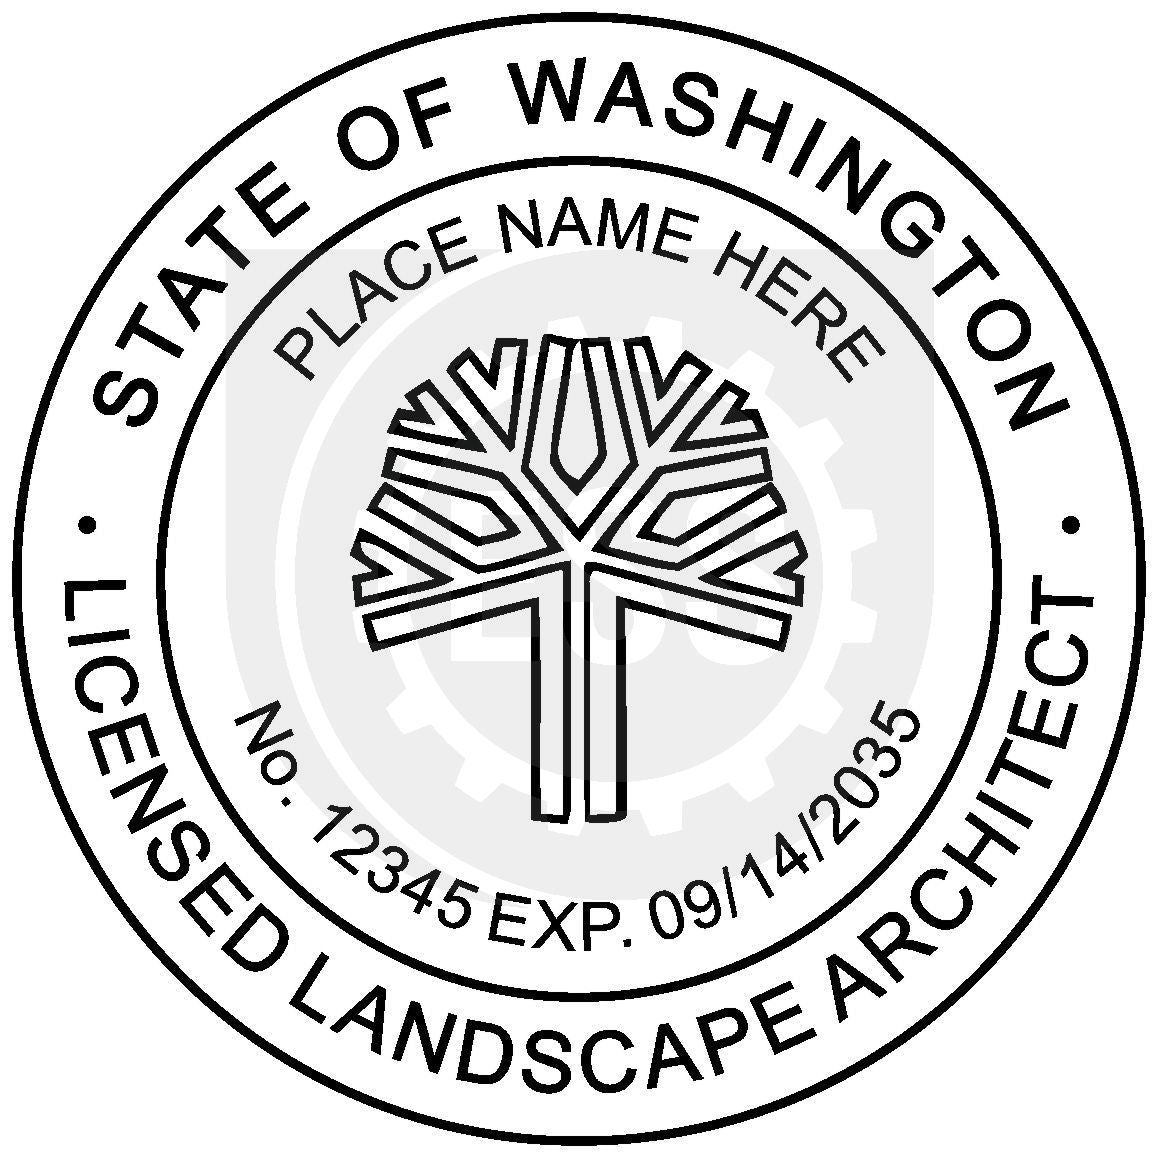 Washington Landscape Architect Seal Setup